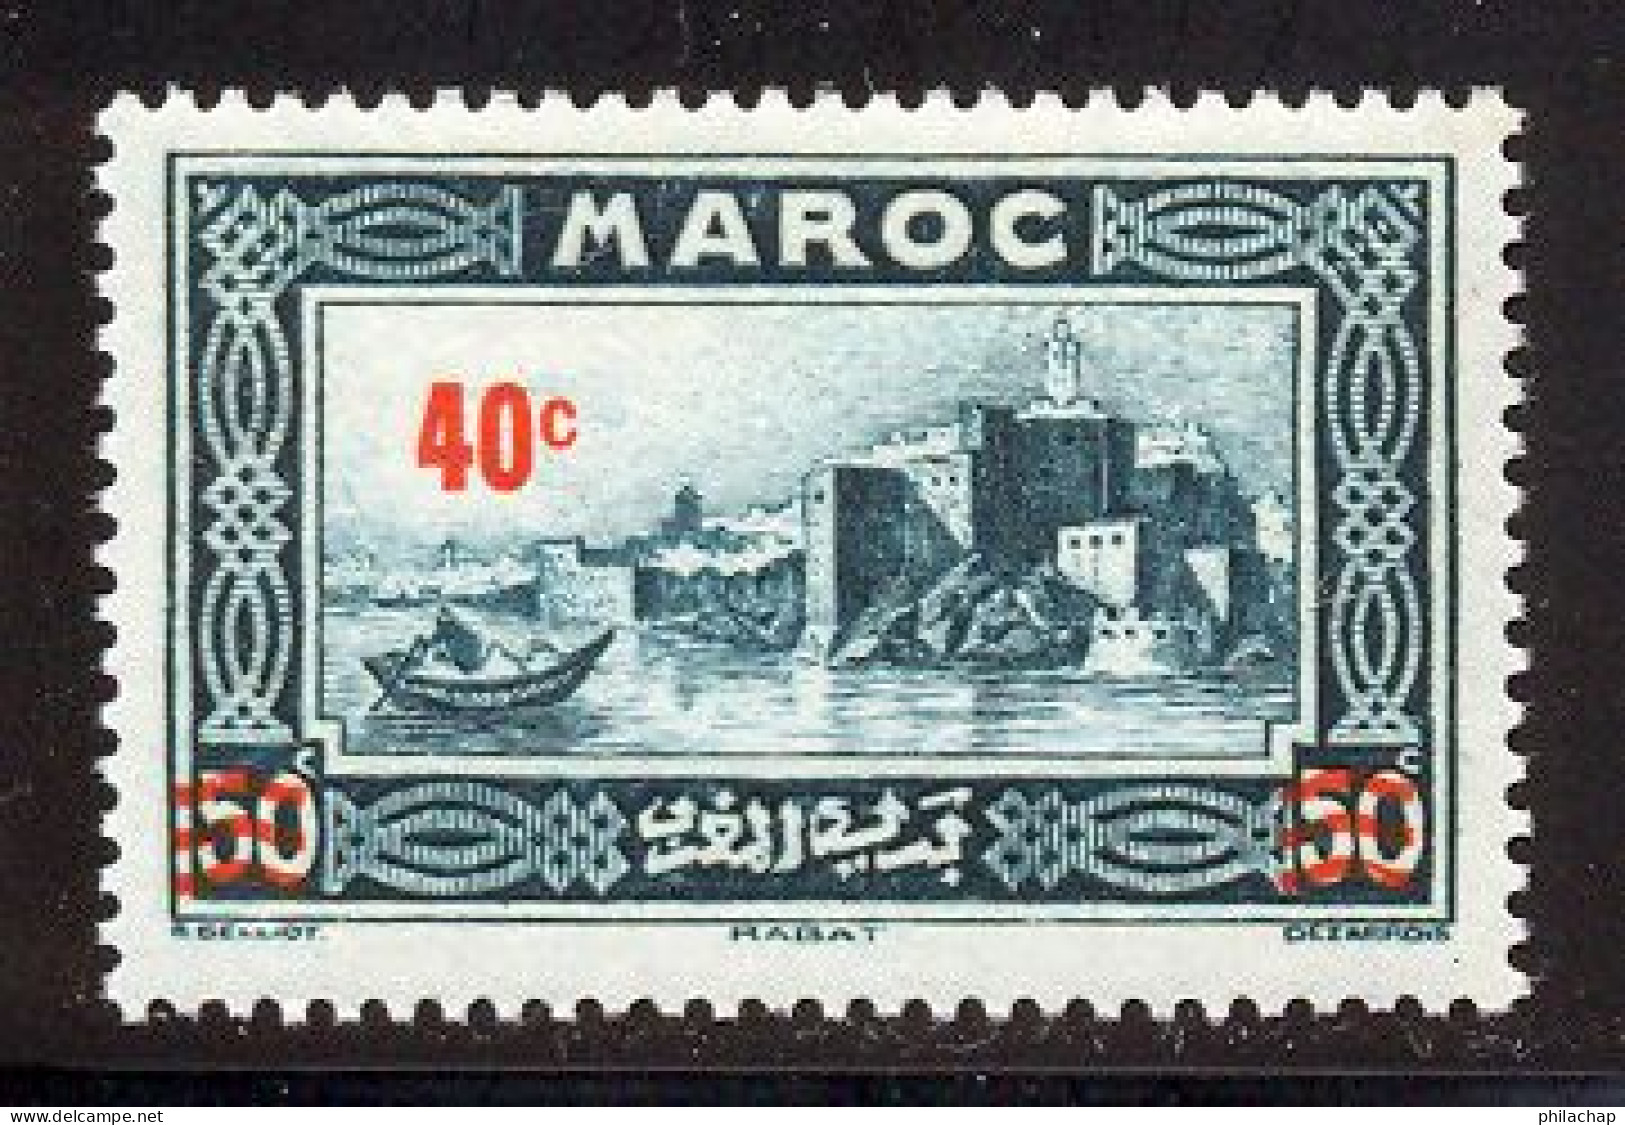 Maroc 1939 Yvert 162 ** TB Coin De Feuille - Neufs